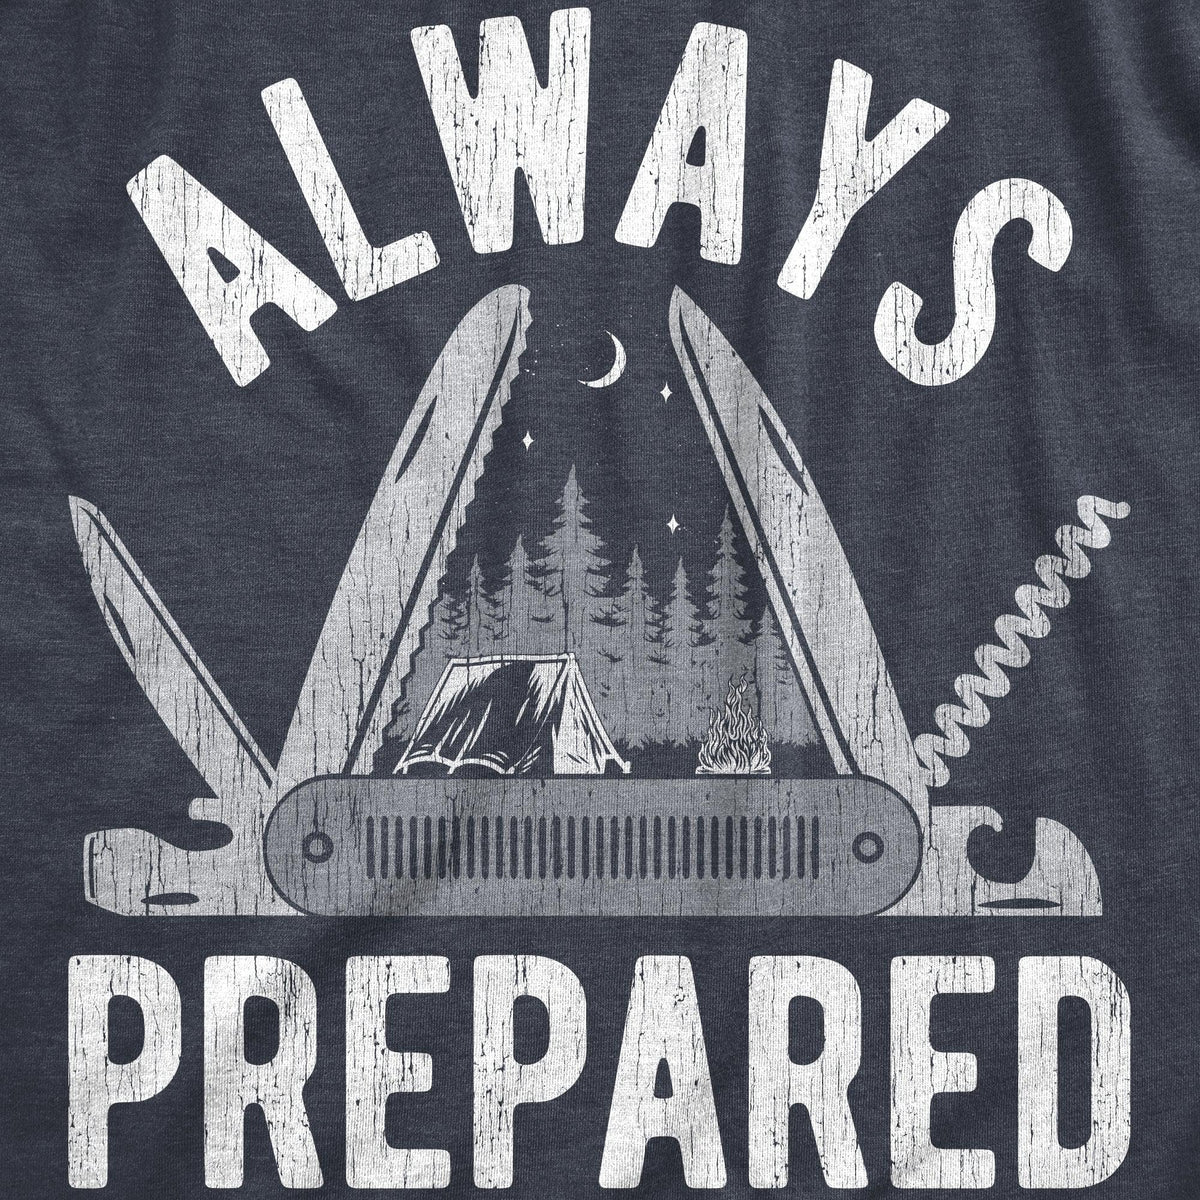 Always Prepared Men&#39;s Tshirt  -  Crazy Dog T-Shirts